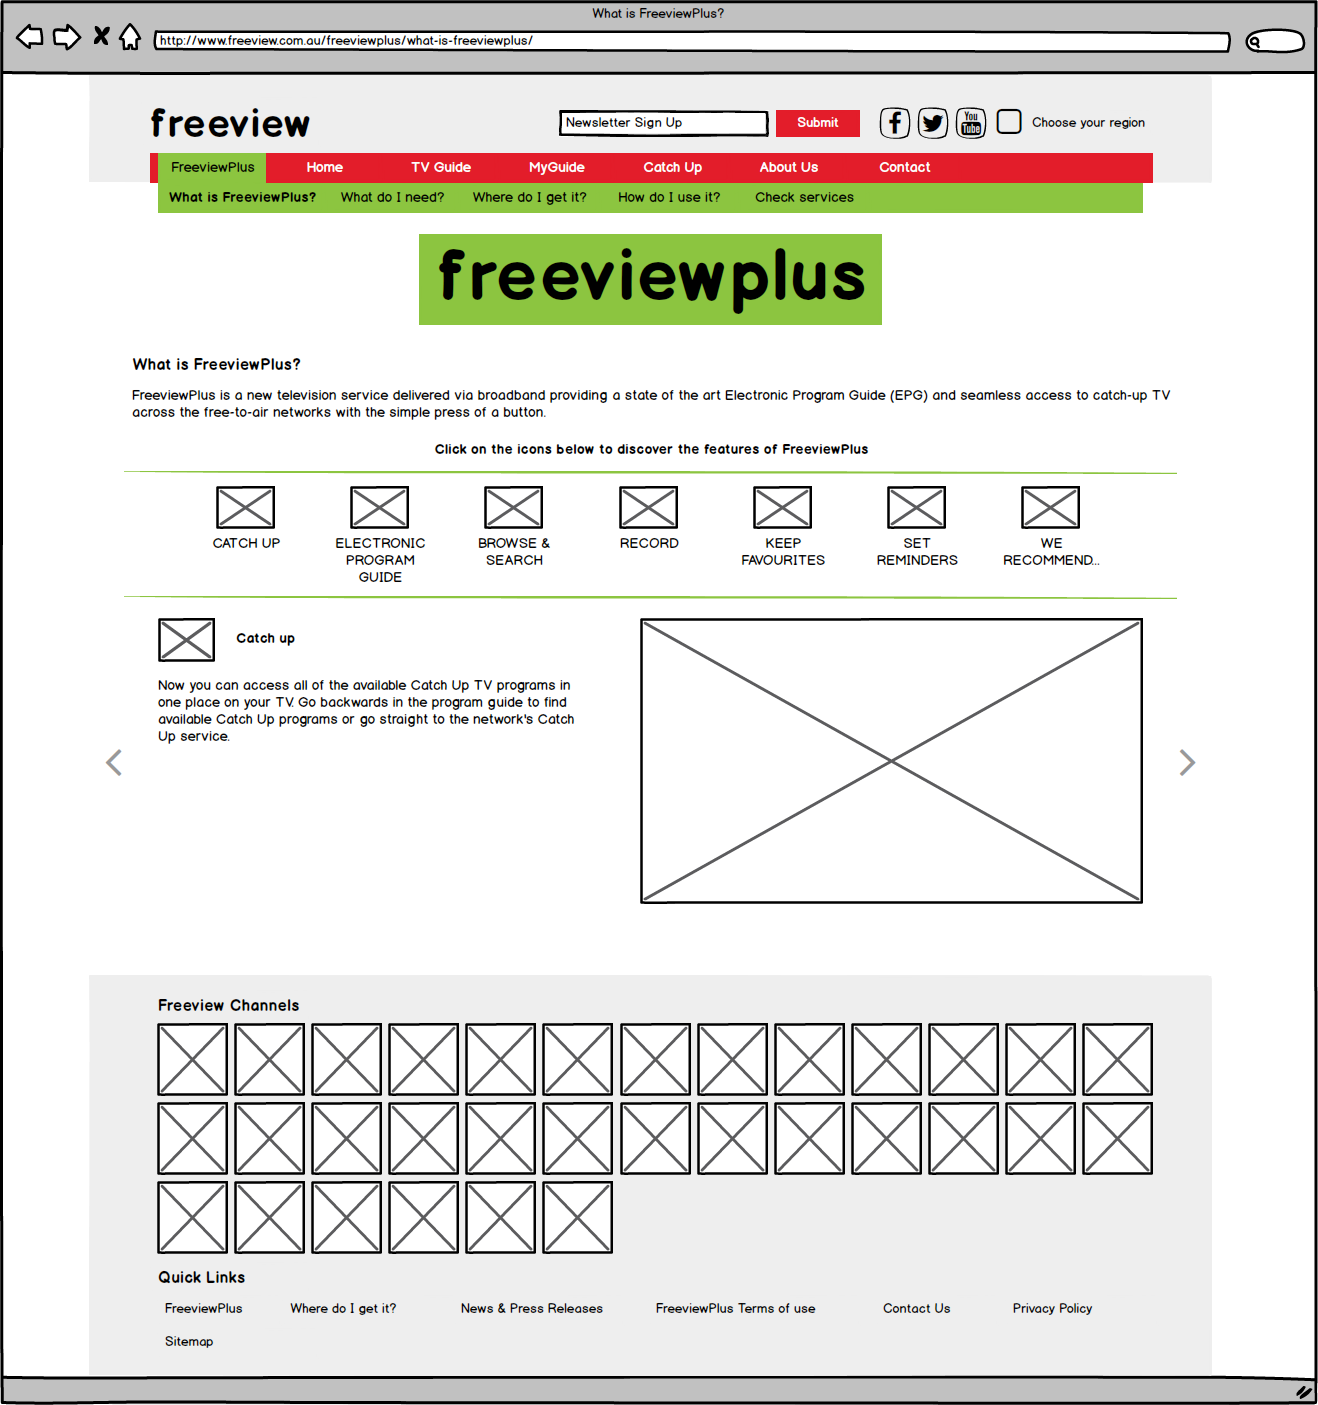 02_FreeviewPlus - What is FreeviewPlus.png